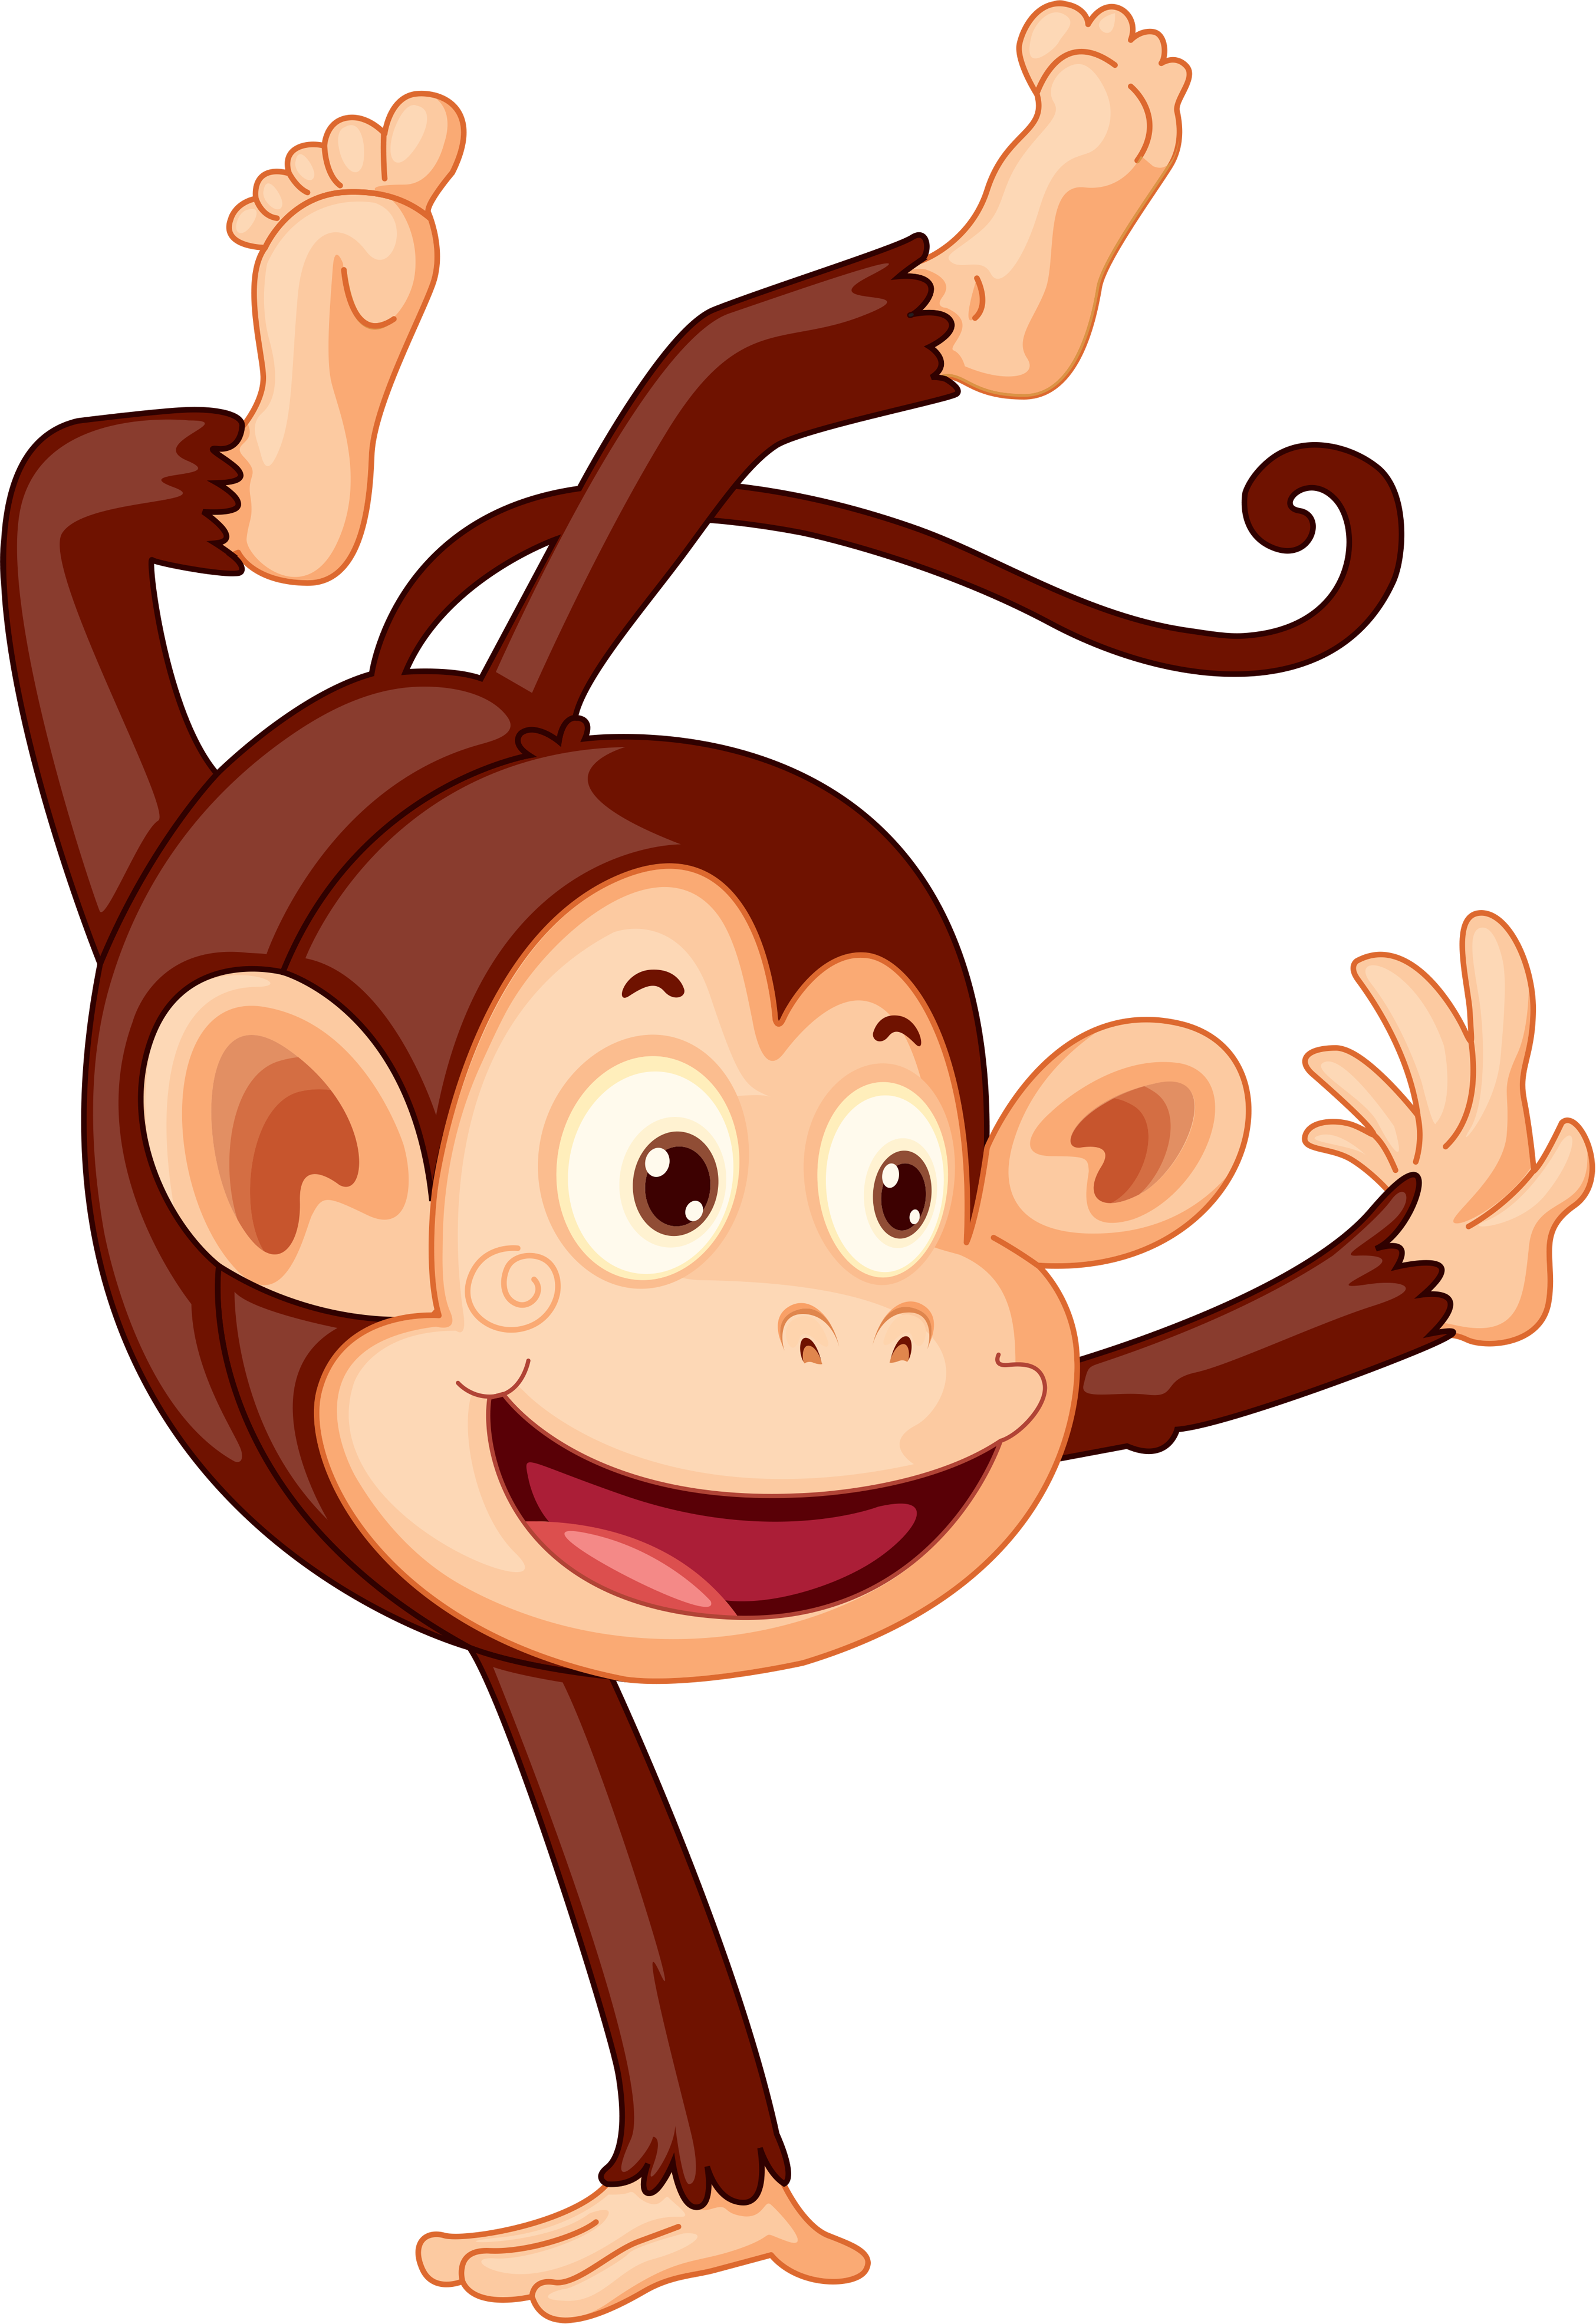 Clipart Images, Monkey Business, Monkeys - Animals Celebrating (2707x3943)